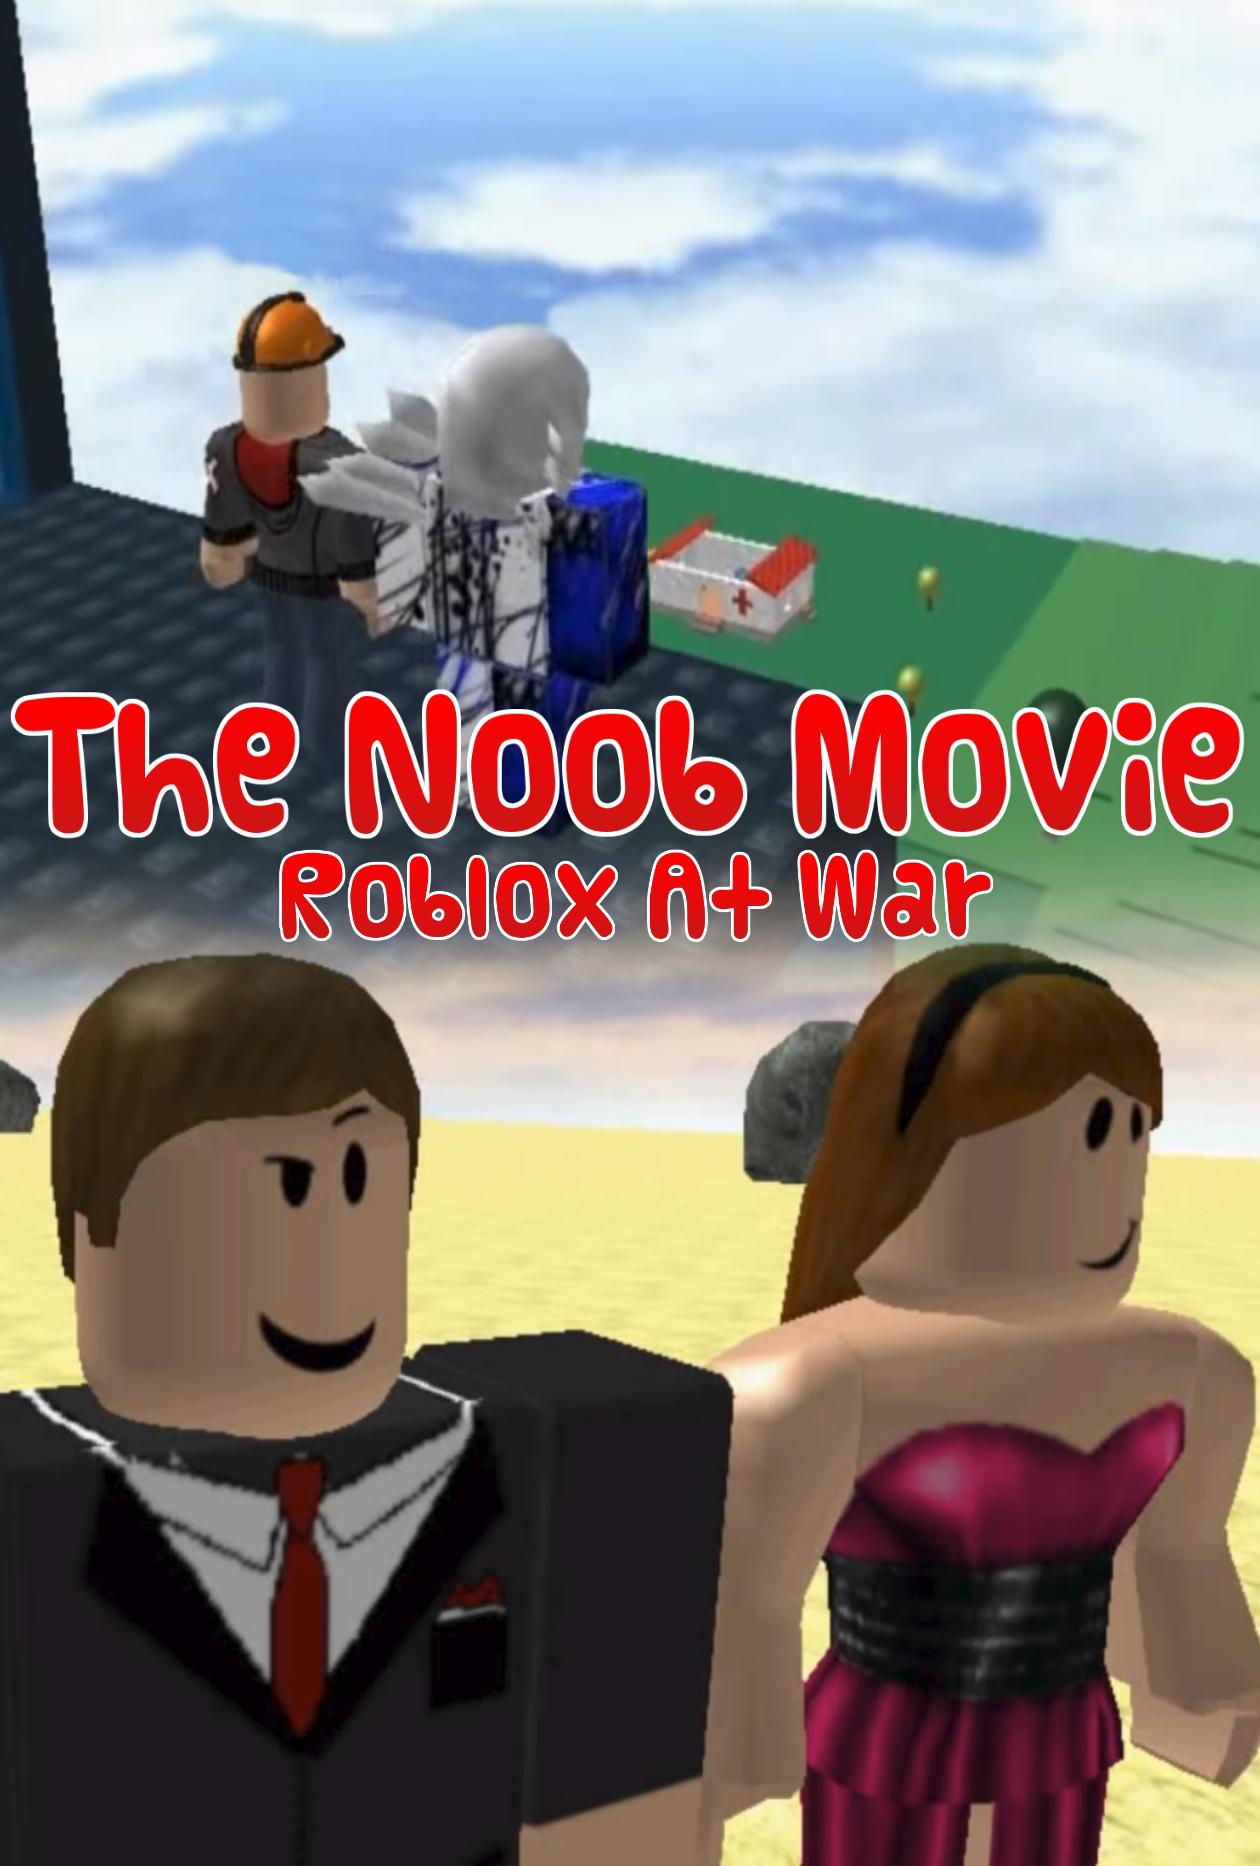 The Noob Movie: Roblox at war